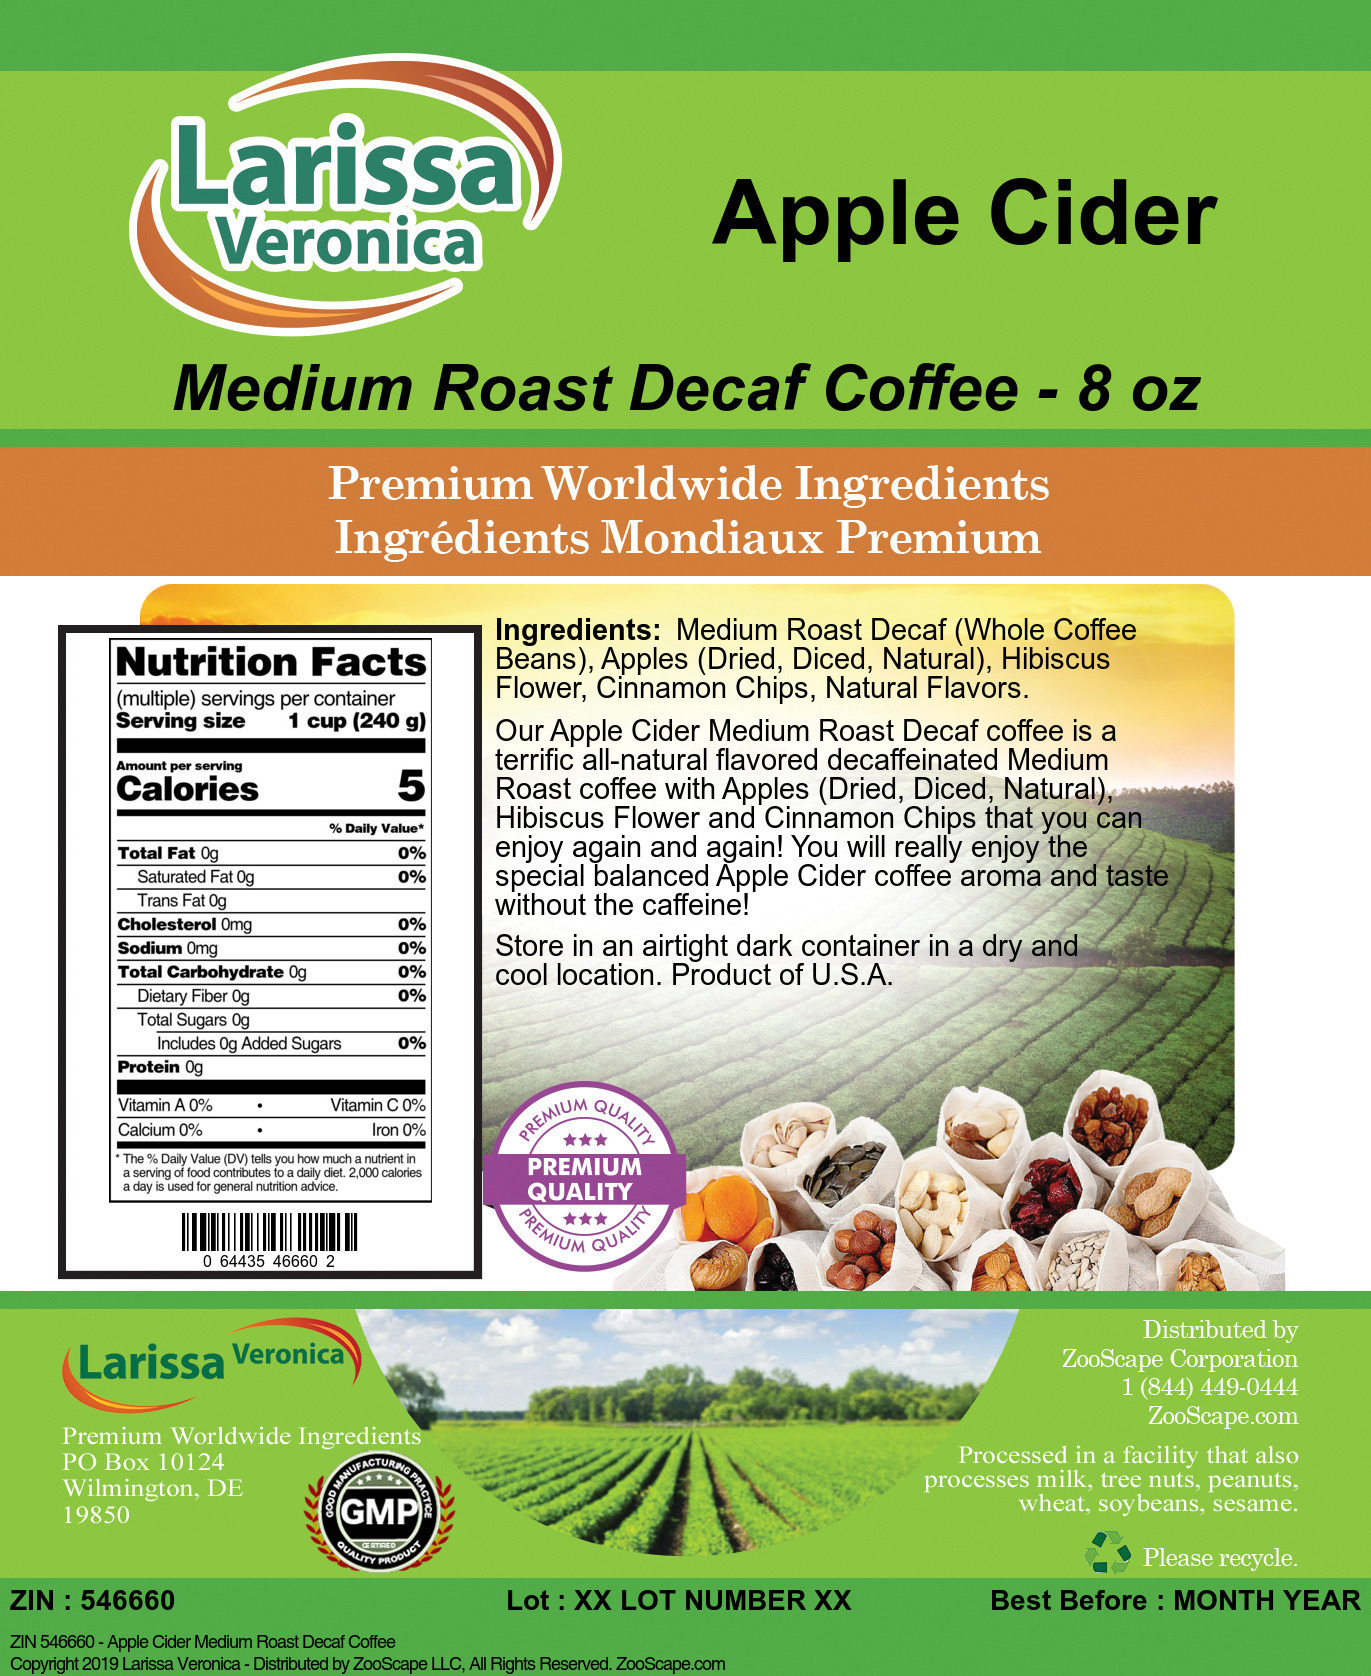 Apple Cider Medium Roast Decaf Coffee - Label